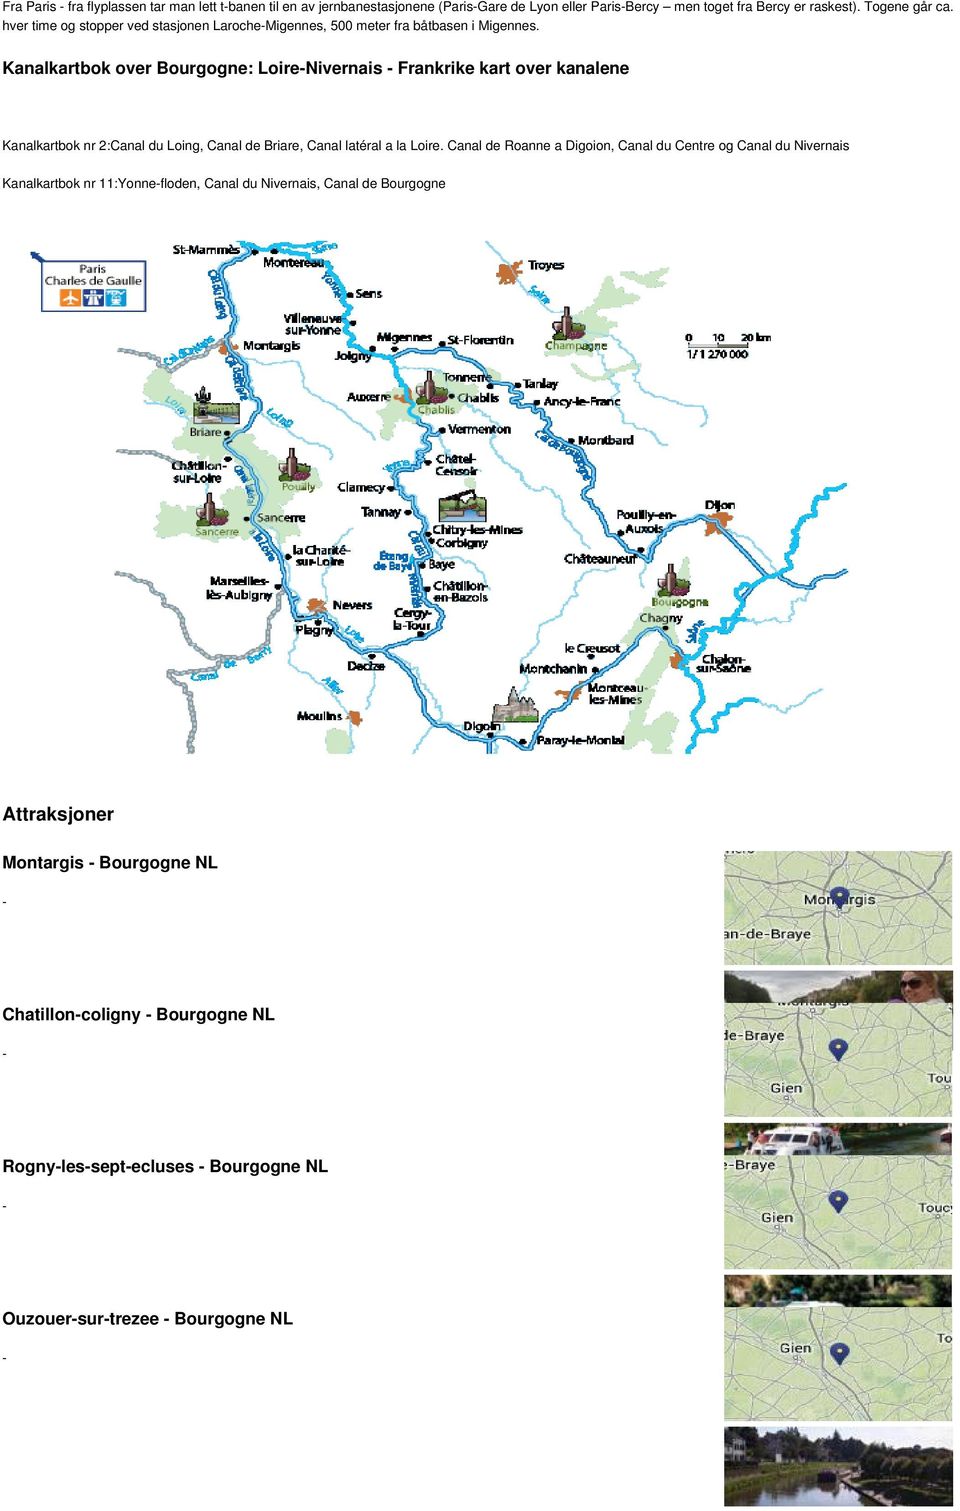 Kanalkartbok over Bourgogne: LoireNivernais Frankrike kart over kanalene Kanalkartbok nr 2:Canal du Loing, Canal de Briare, Canal latéral a la Loire.